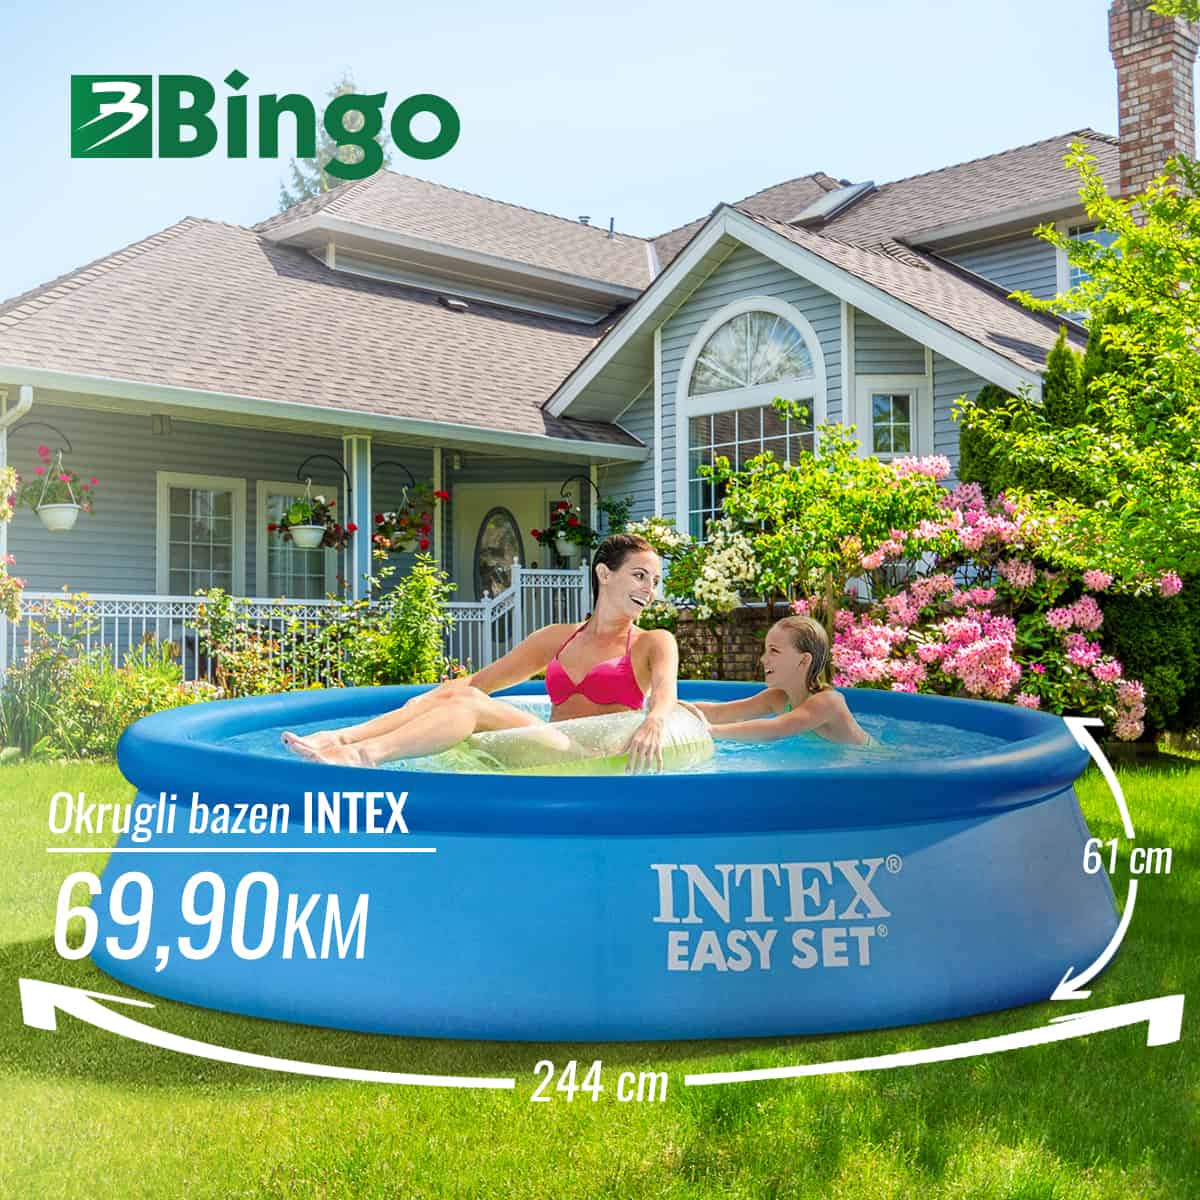 U Bingo prodavnicama pronaci cete sniženje bazena. Akcijske cijene bazena krecu se od 69,90 KM